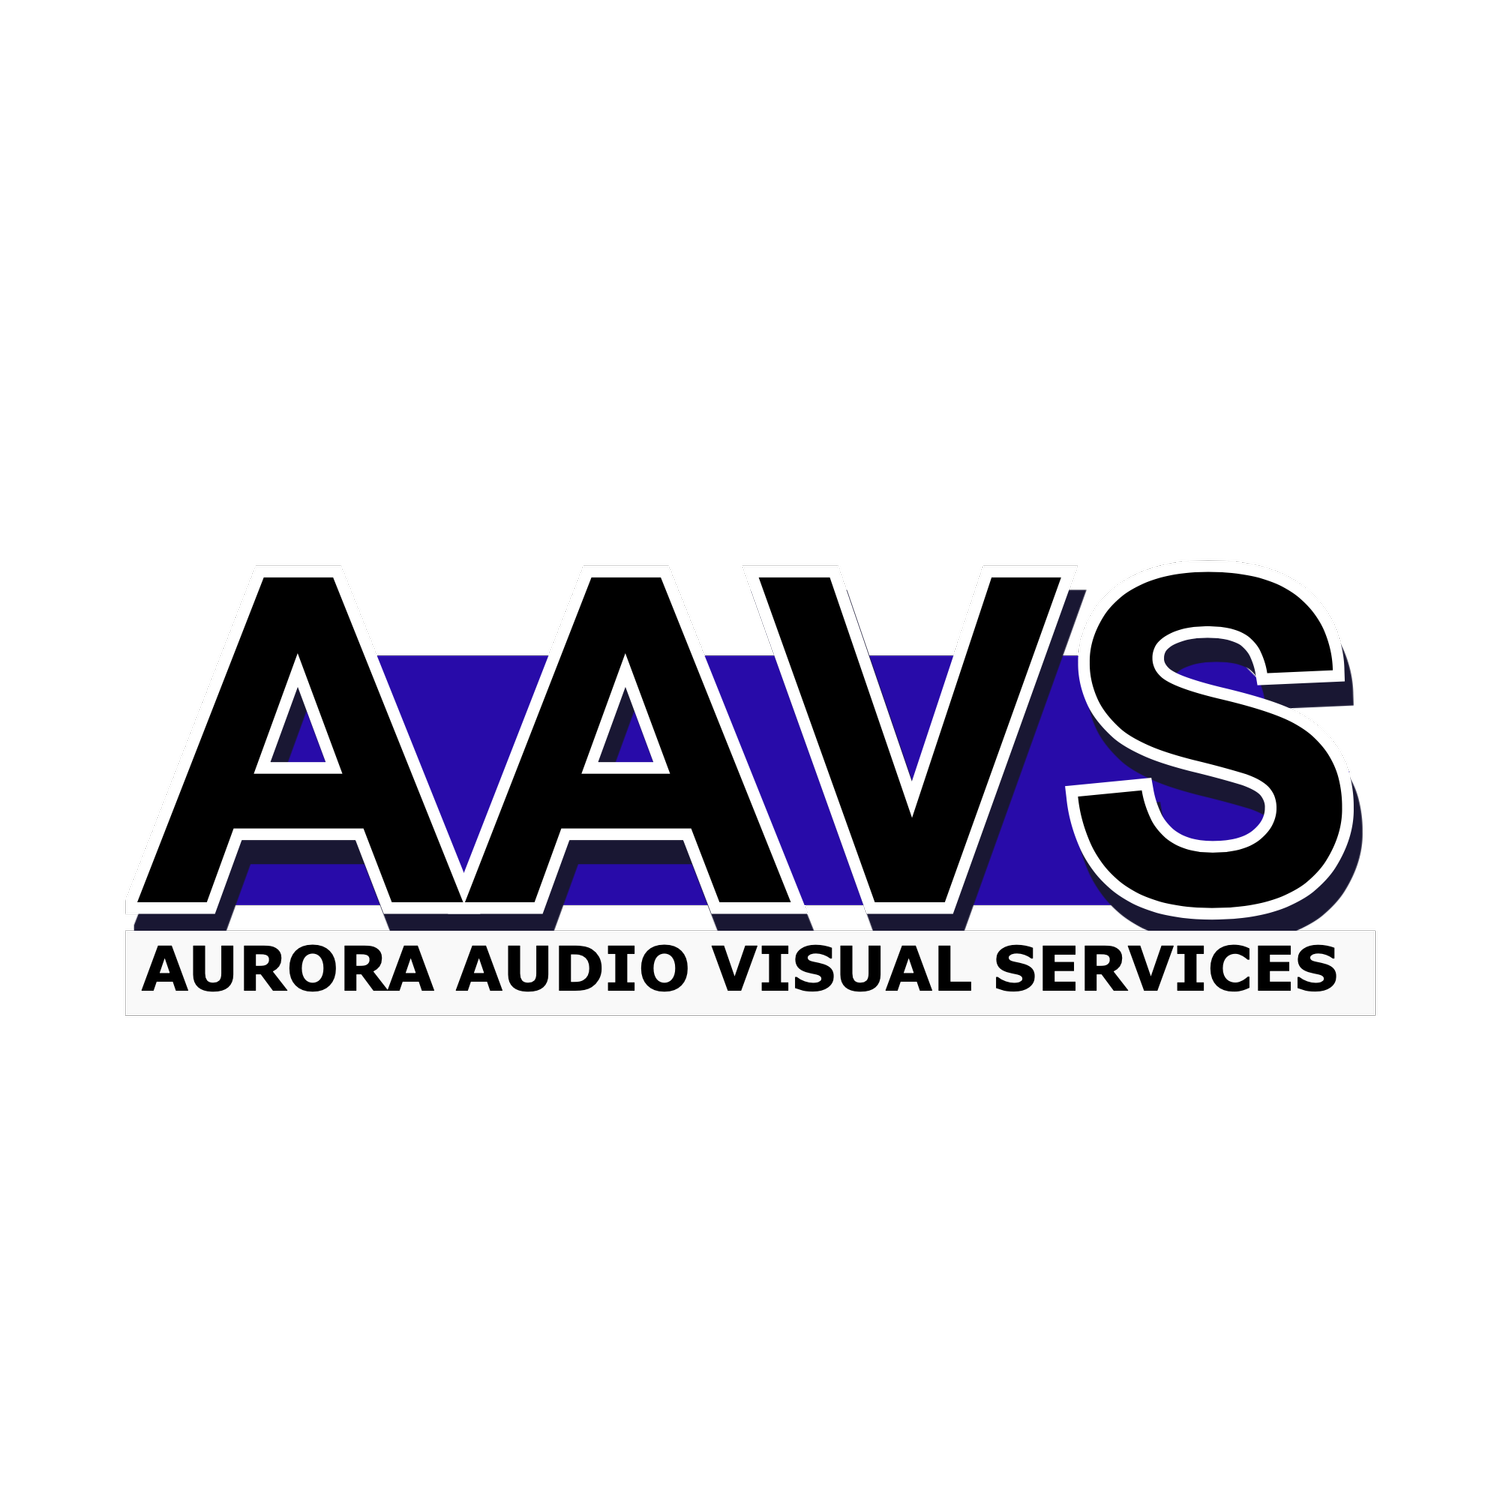 Aurora Audio Visual Services